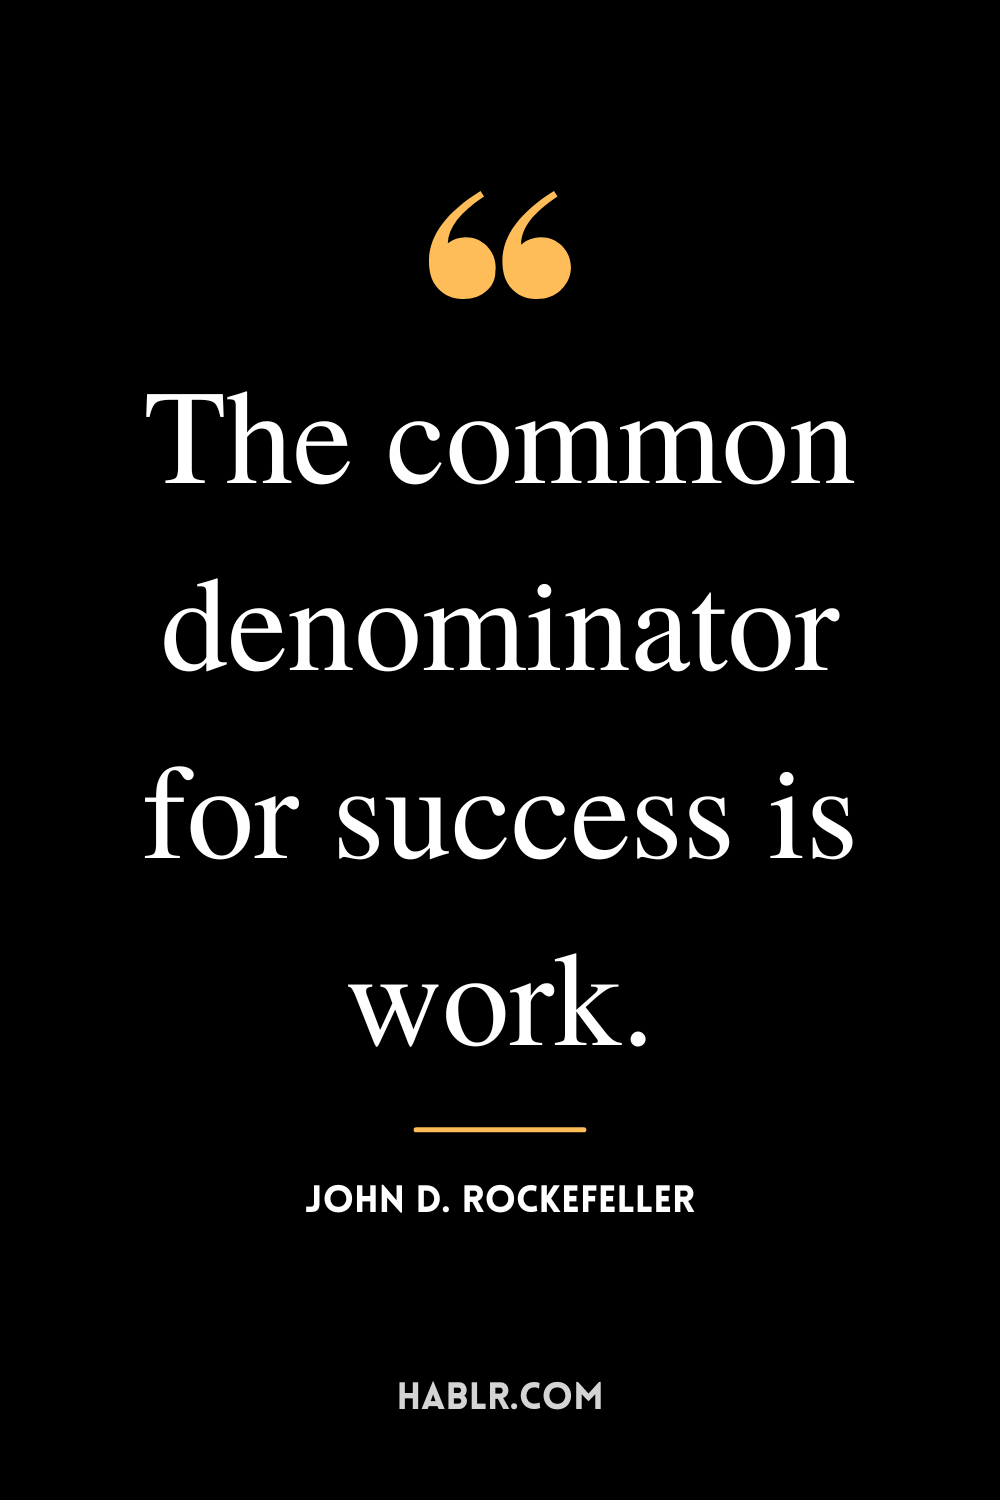 “The common denominator for success is work.” -John D. Rockefeller